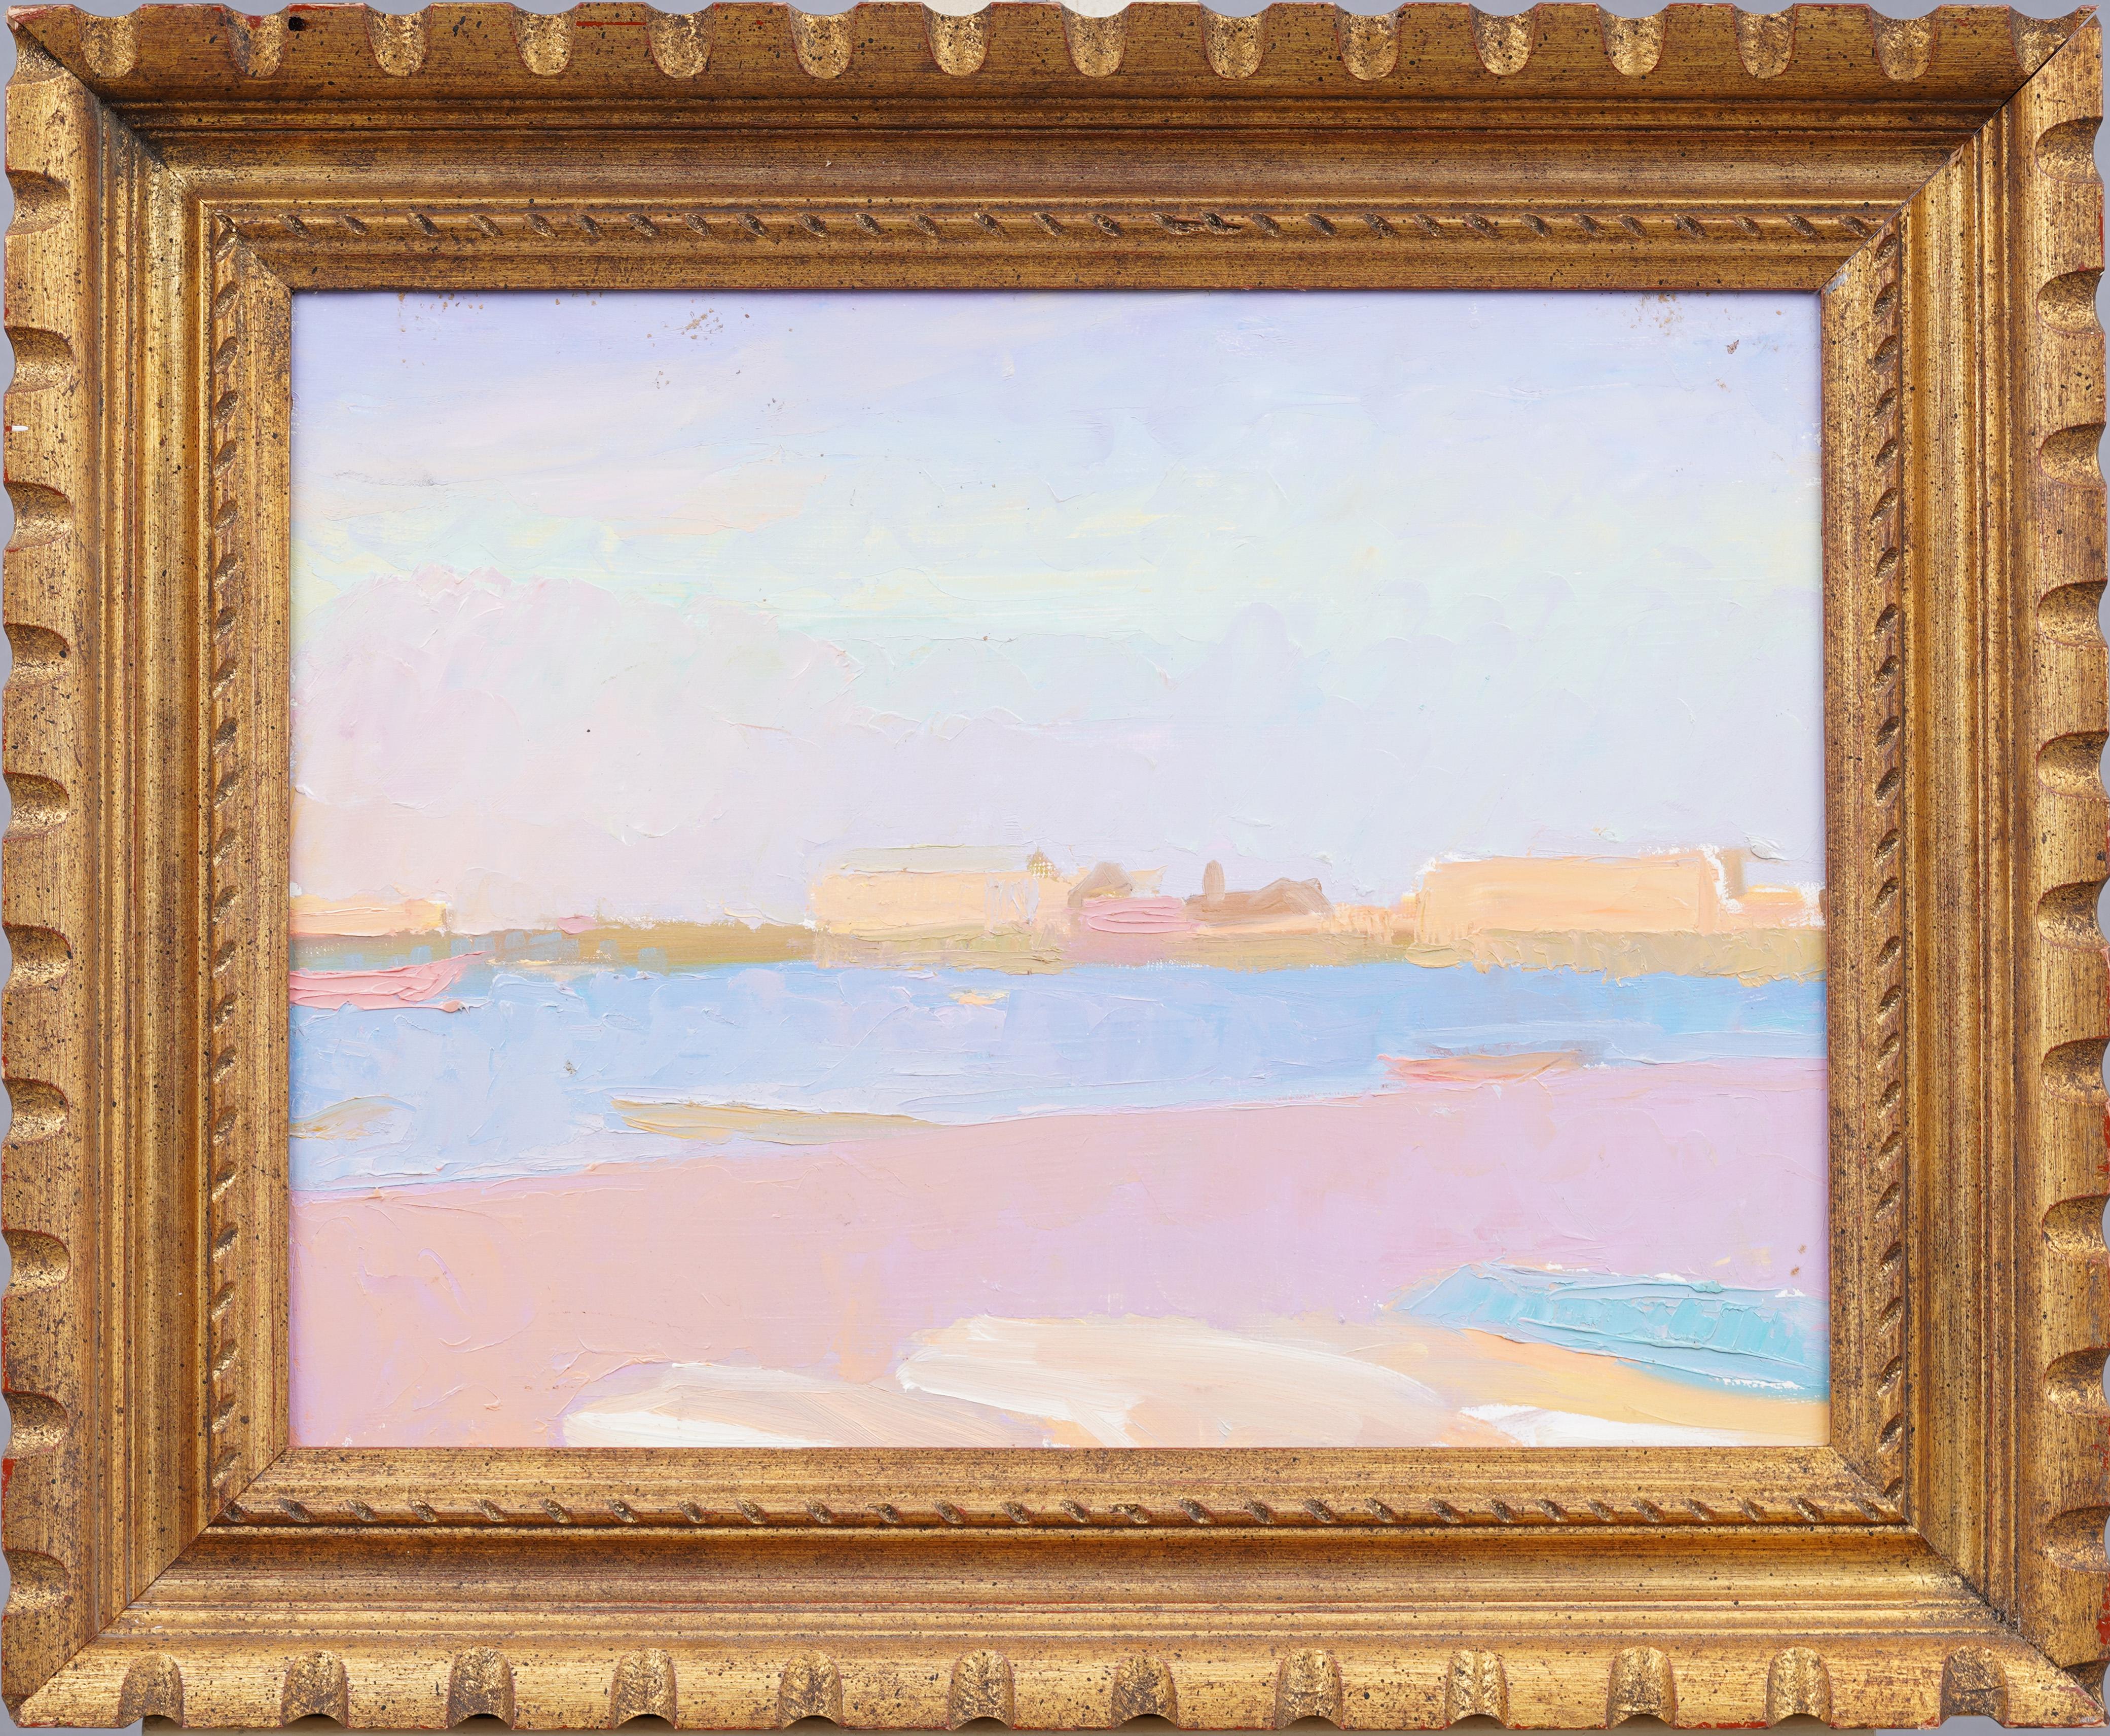 Unknown Abstract Painting – Antikes amerikanisches modernistisches Ölgemälde mit Sommer-, Strand- und Meeresszene, gerahmt, Hamptons